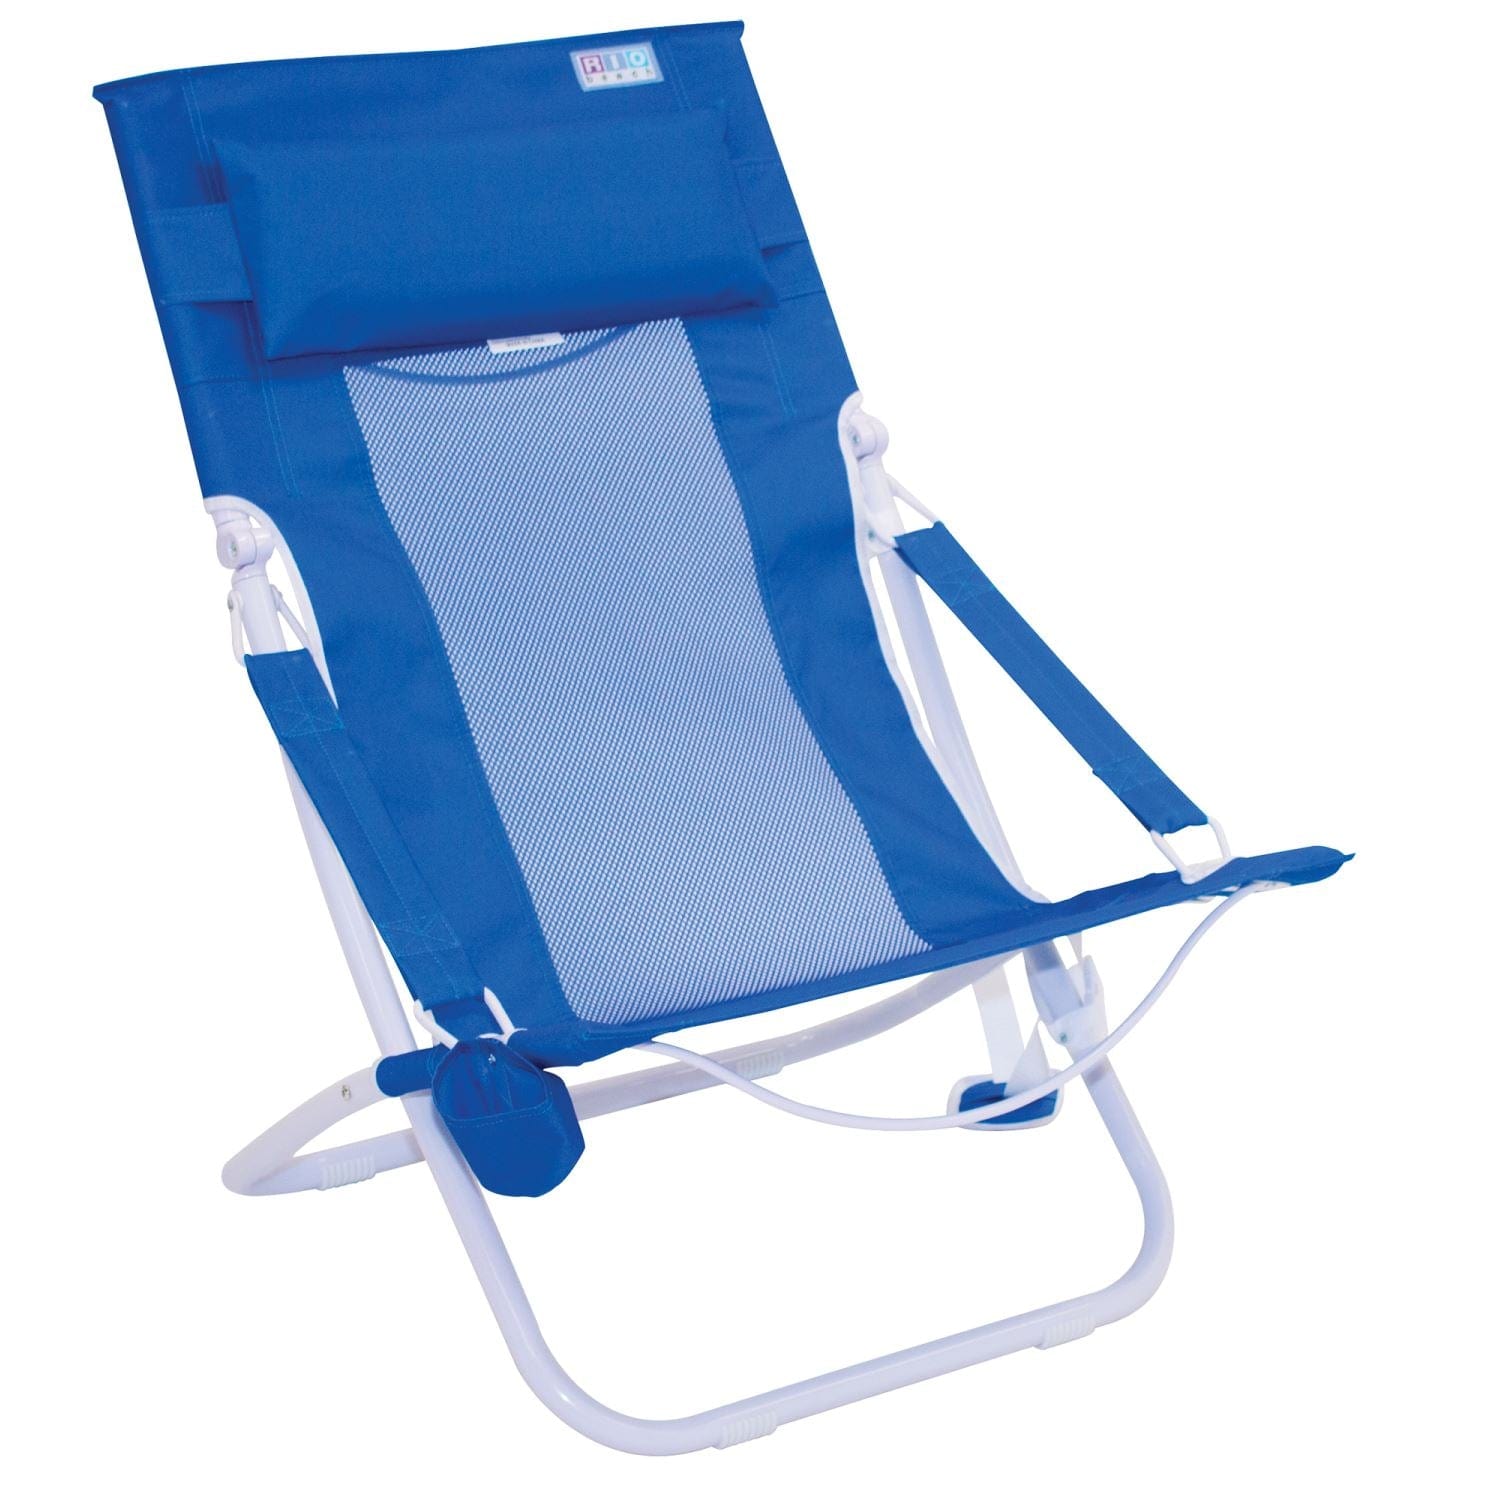 RIO chair RIO Gear | Breeze Hammock Chair - Blue BHC101-46-1